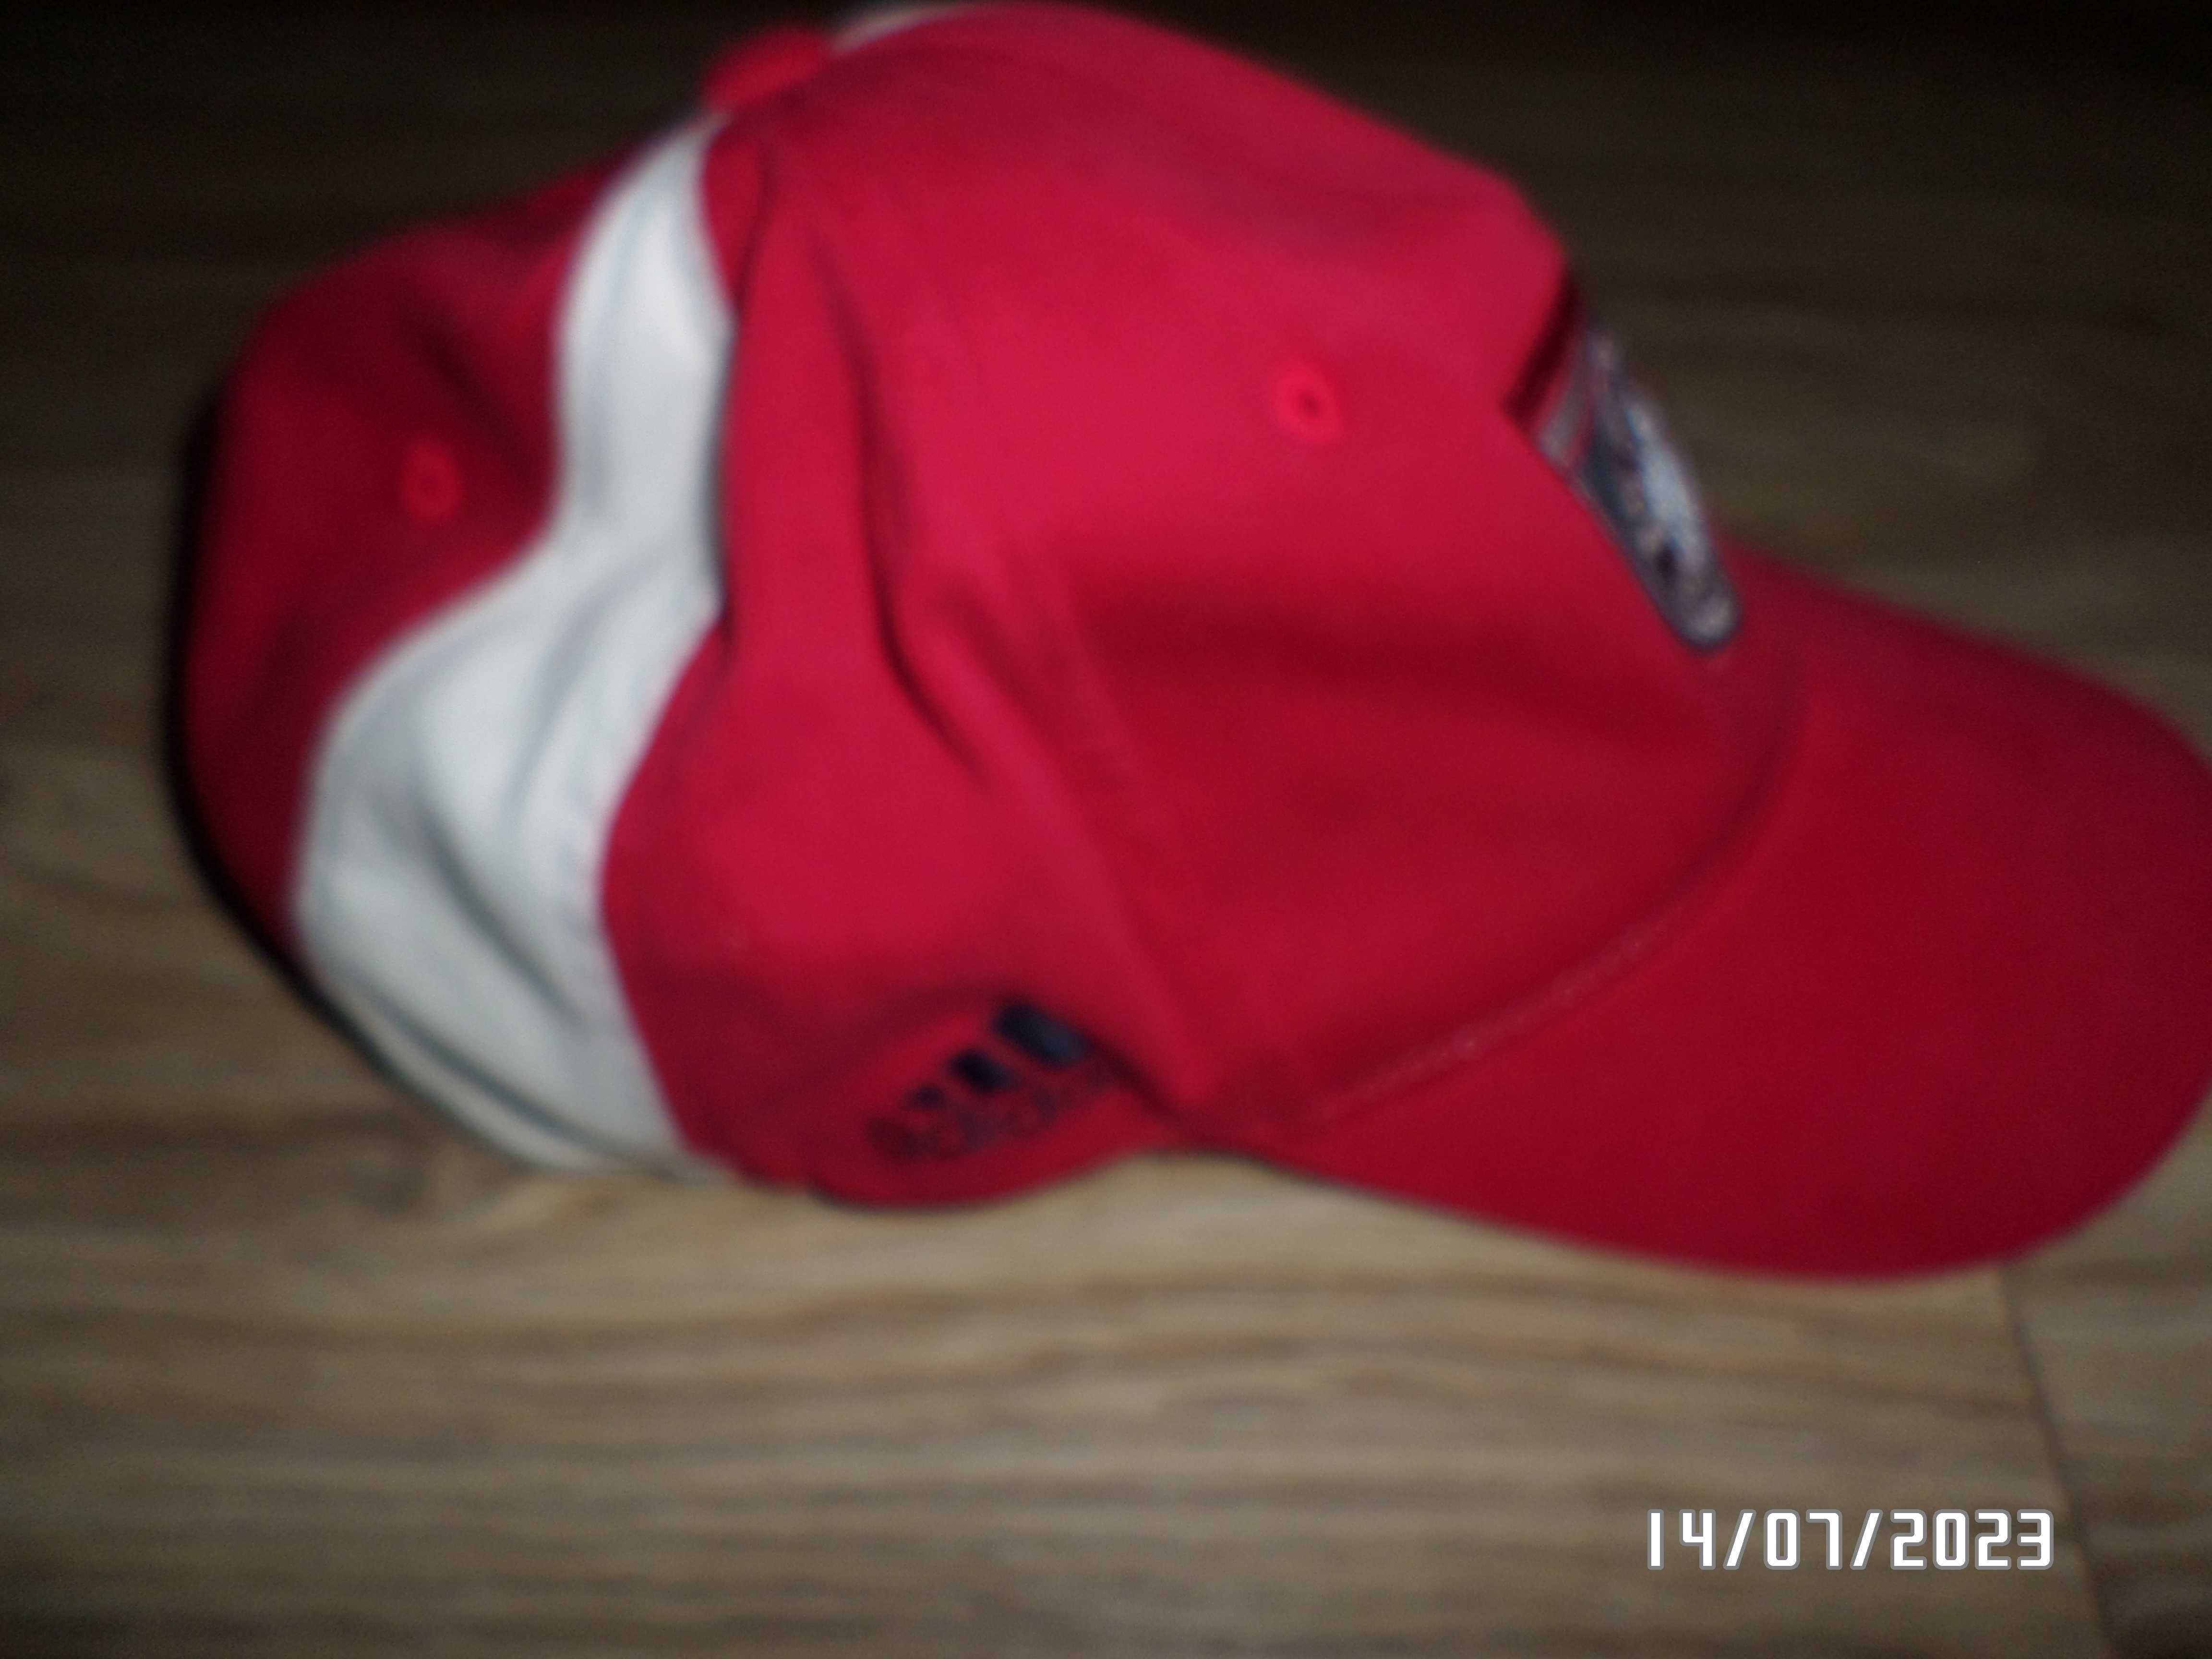 super-oryginalna czapka z daszkiem- rozm-M-Adidas-FC